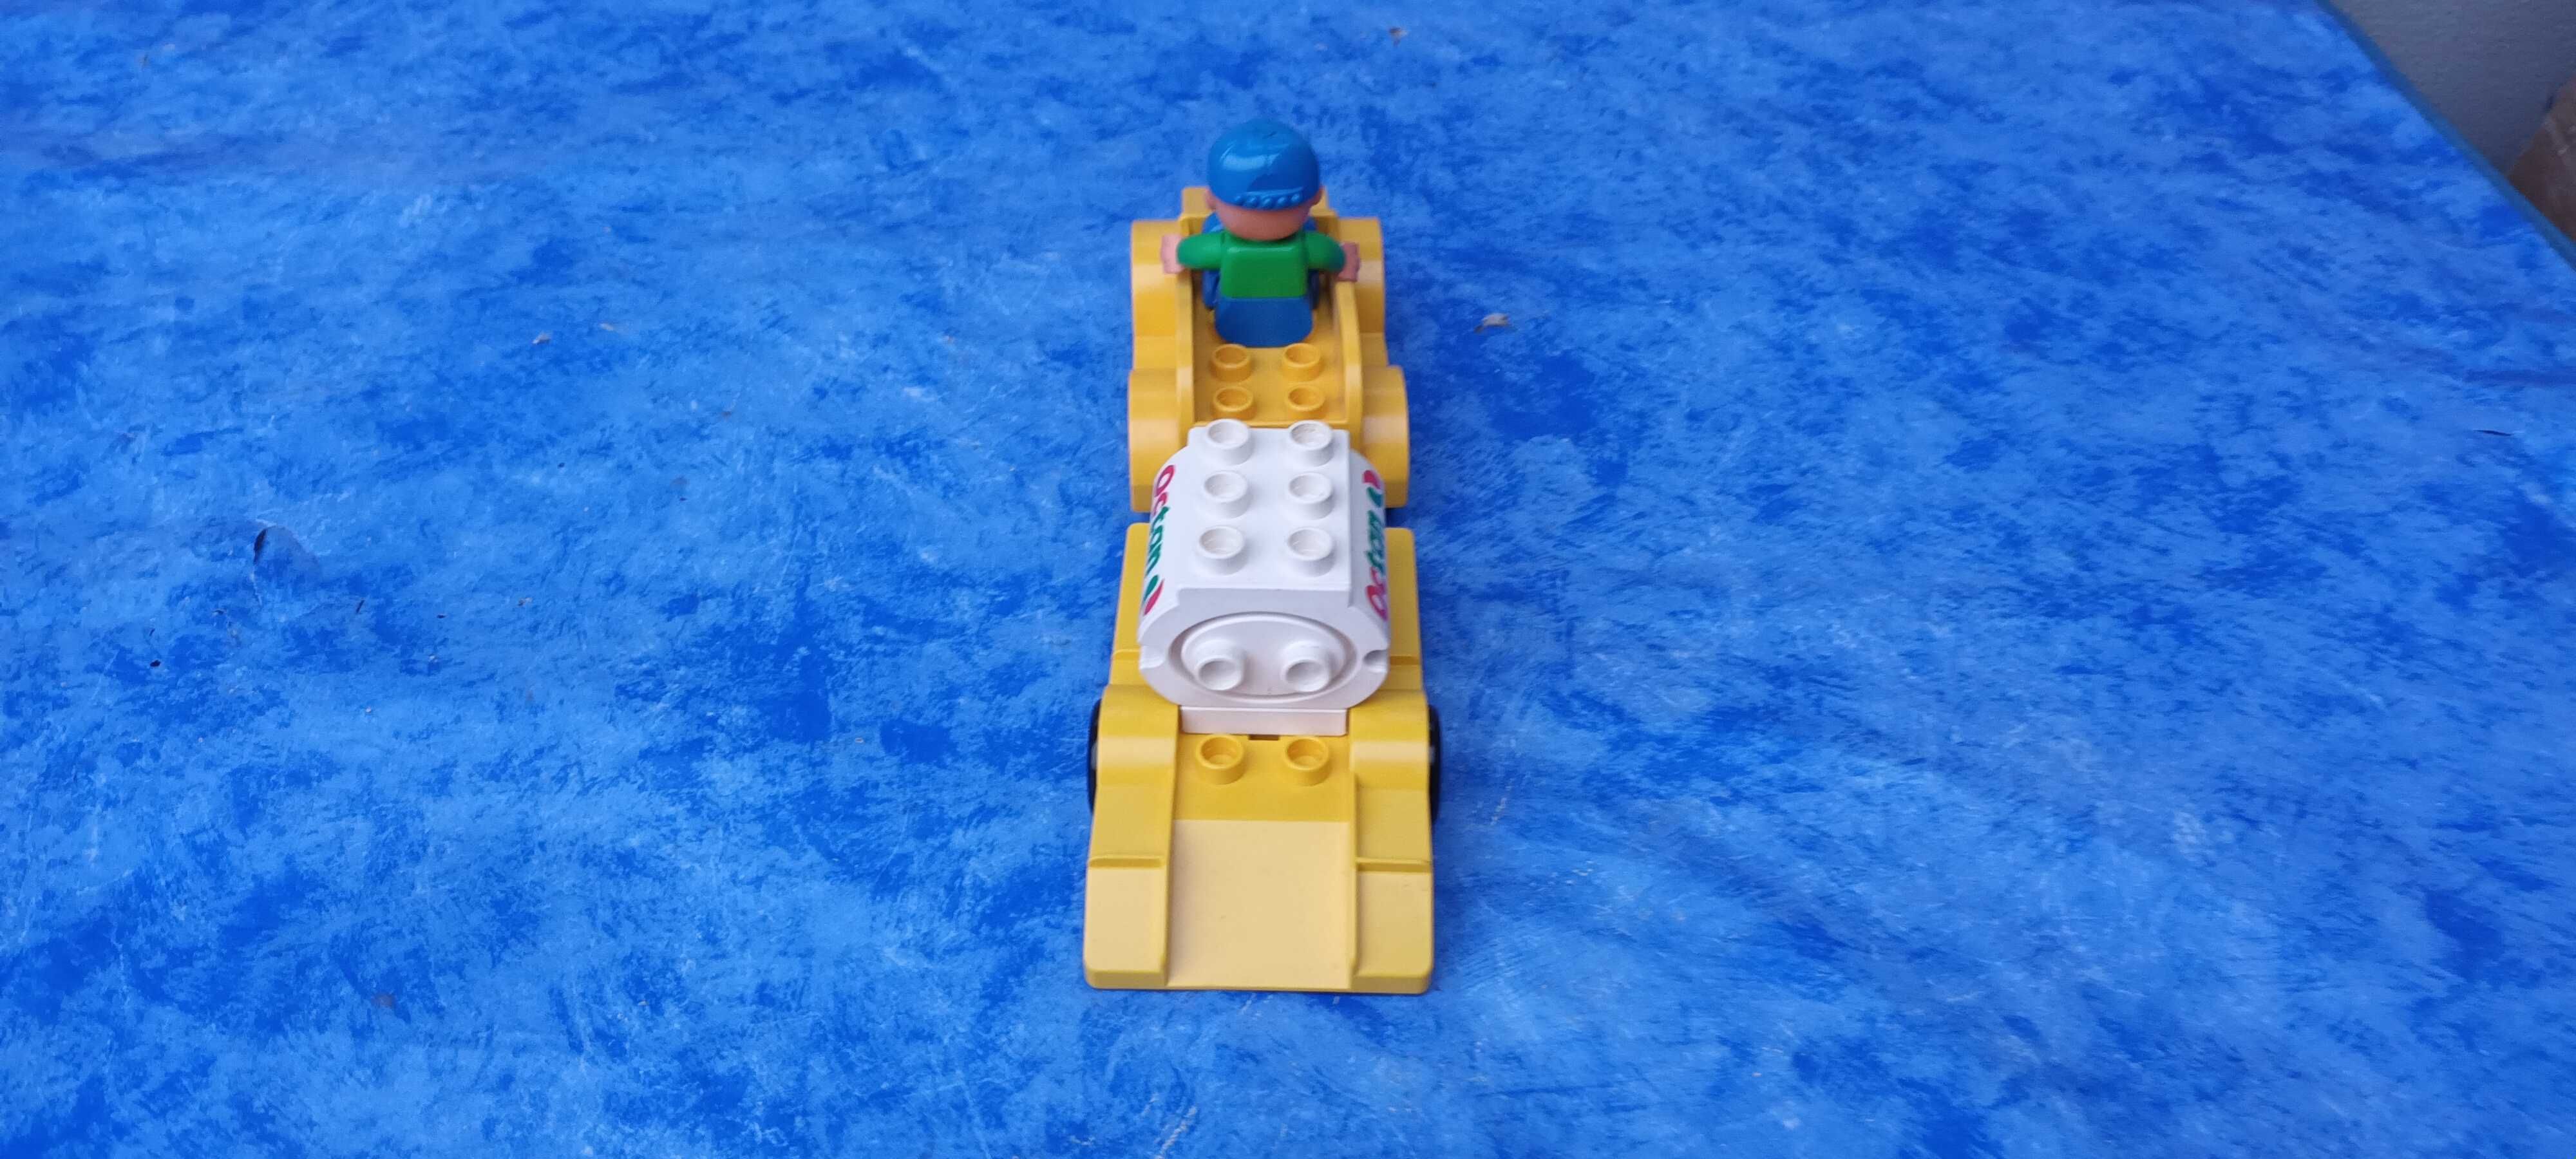 Lego Duplo | mini masinute transport | 23*6.5*8 cm